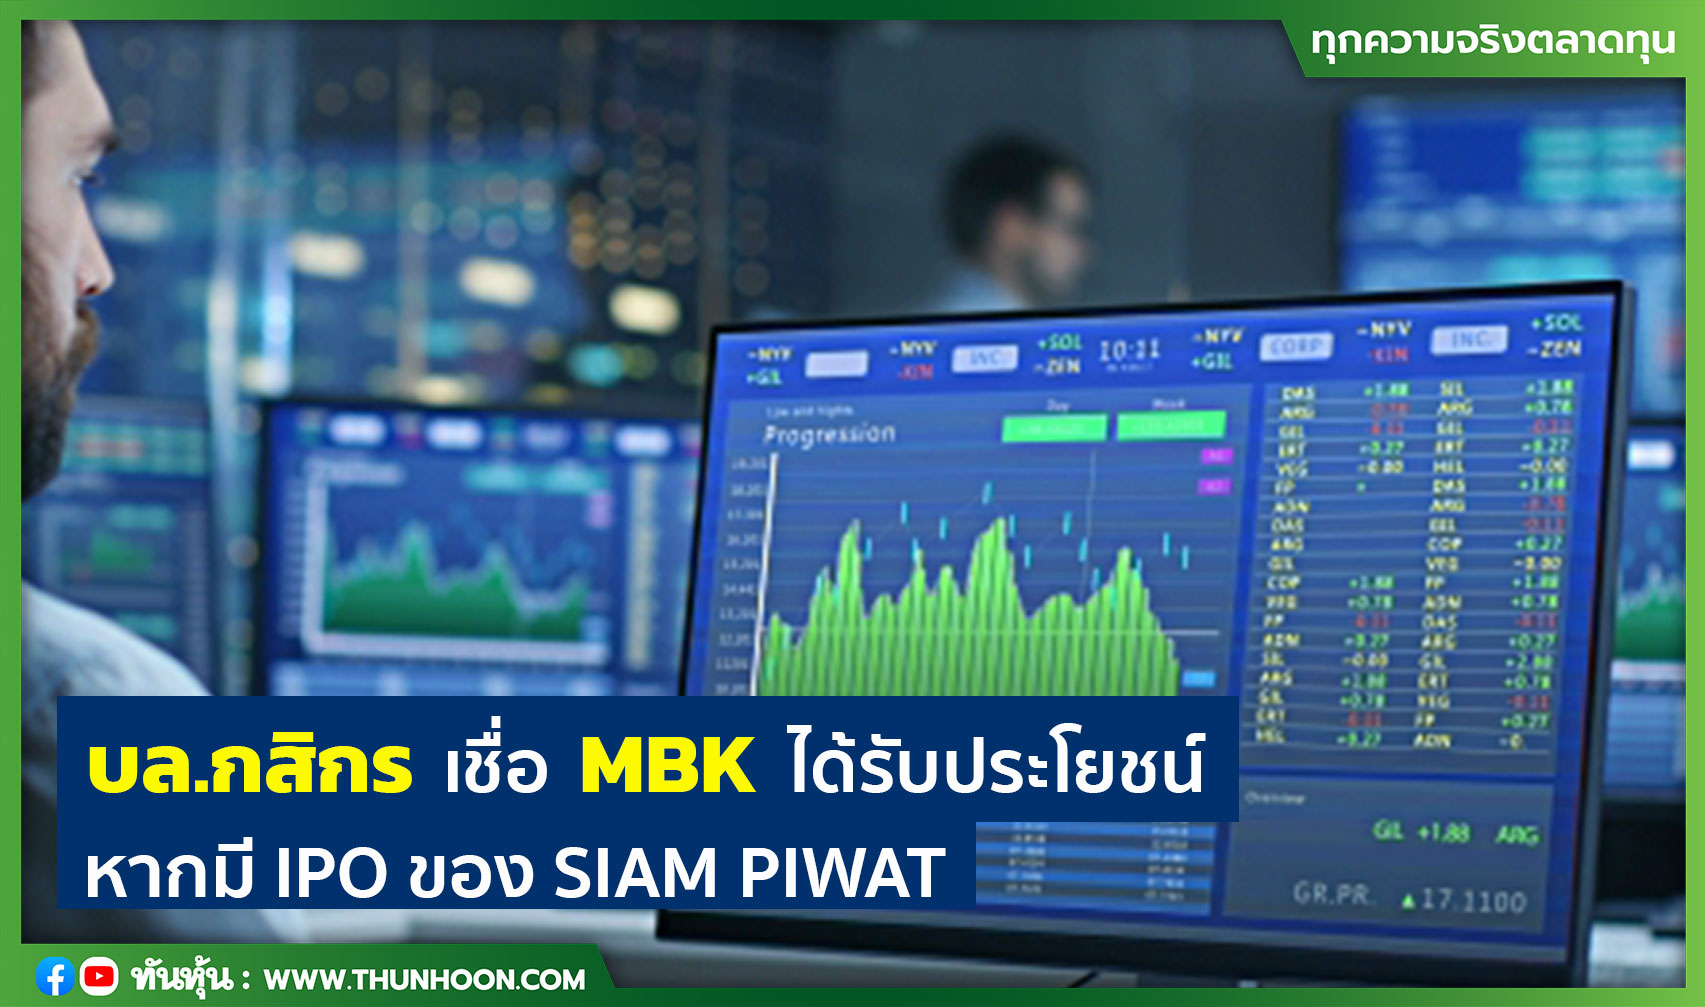  บล.กสิกร เชื่อ MBK ได้รับประโยชน์ หากมี IPO ของ SIAM PIWAT